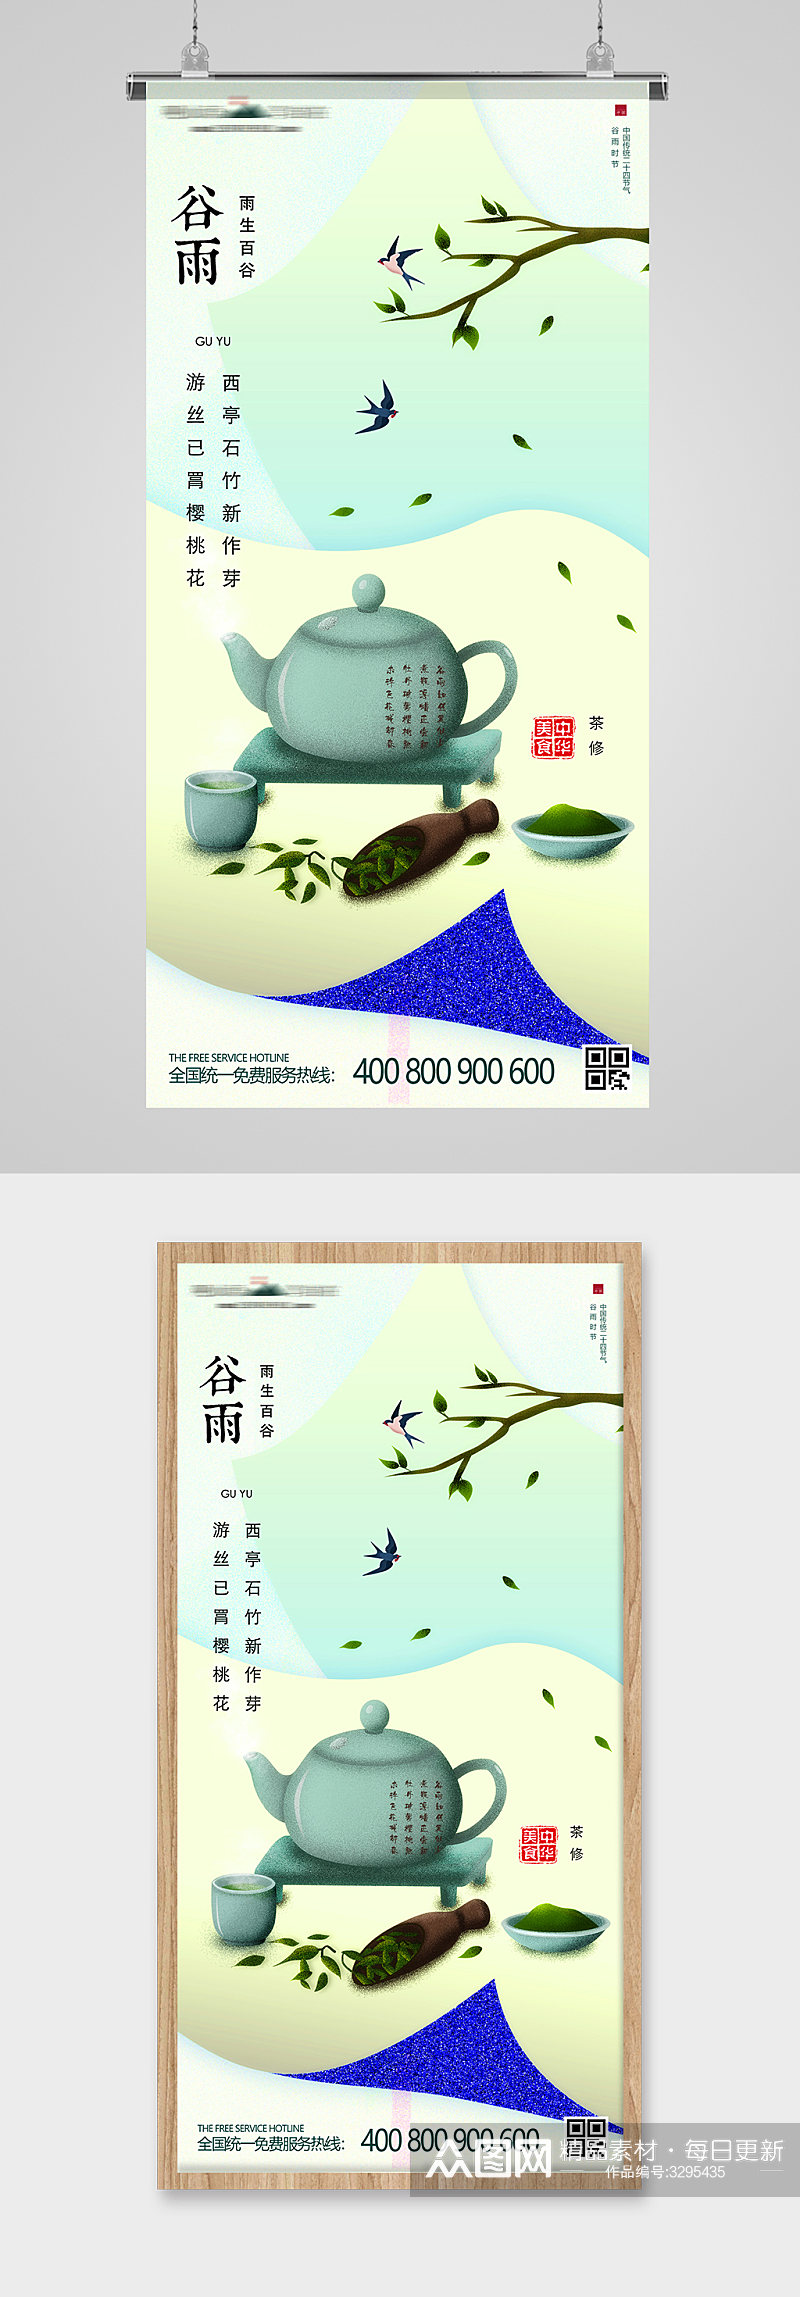 谷雨节气茶饮插画节日节气海报素材